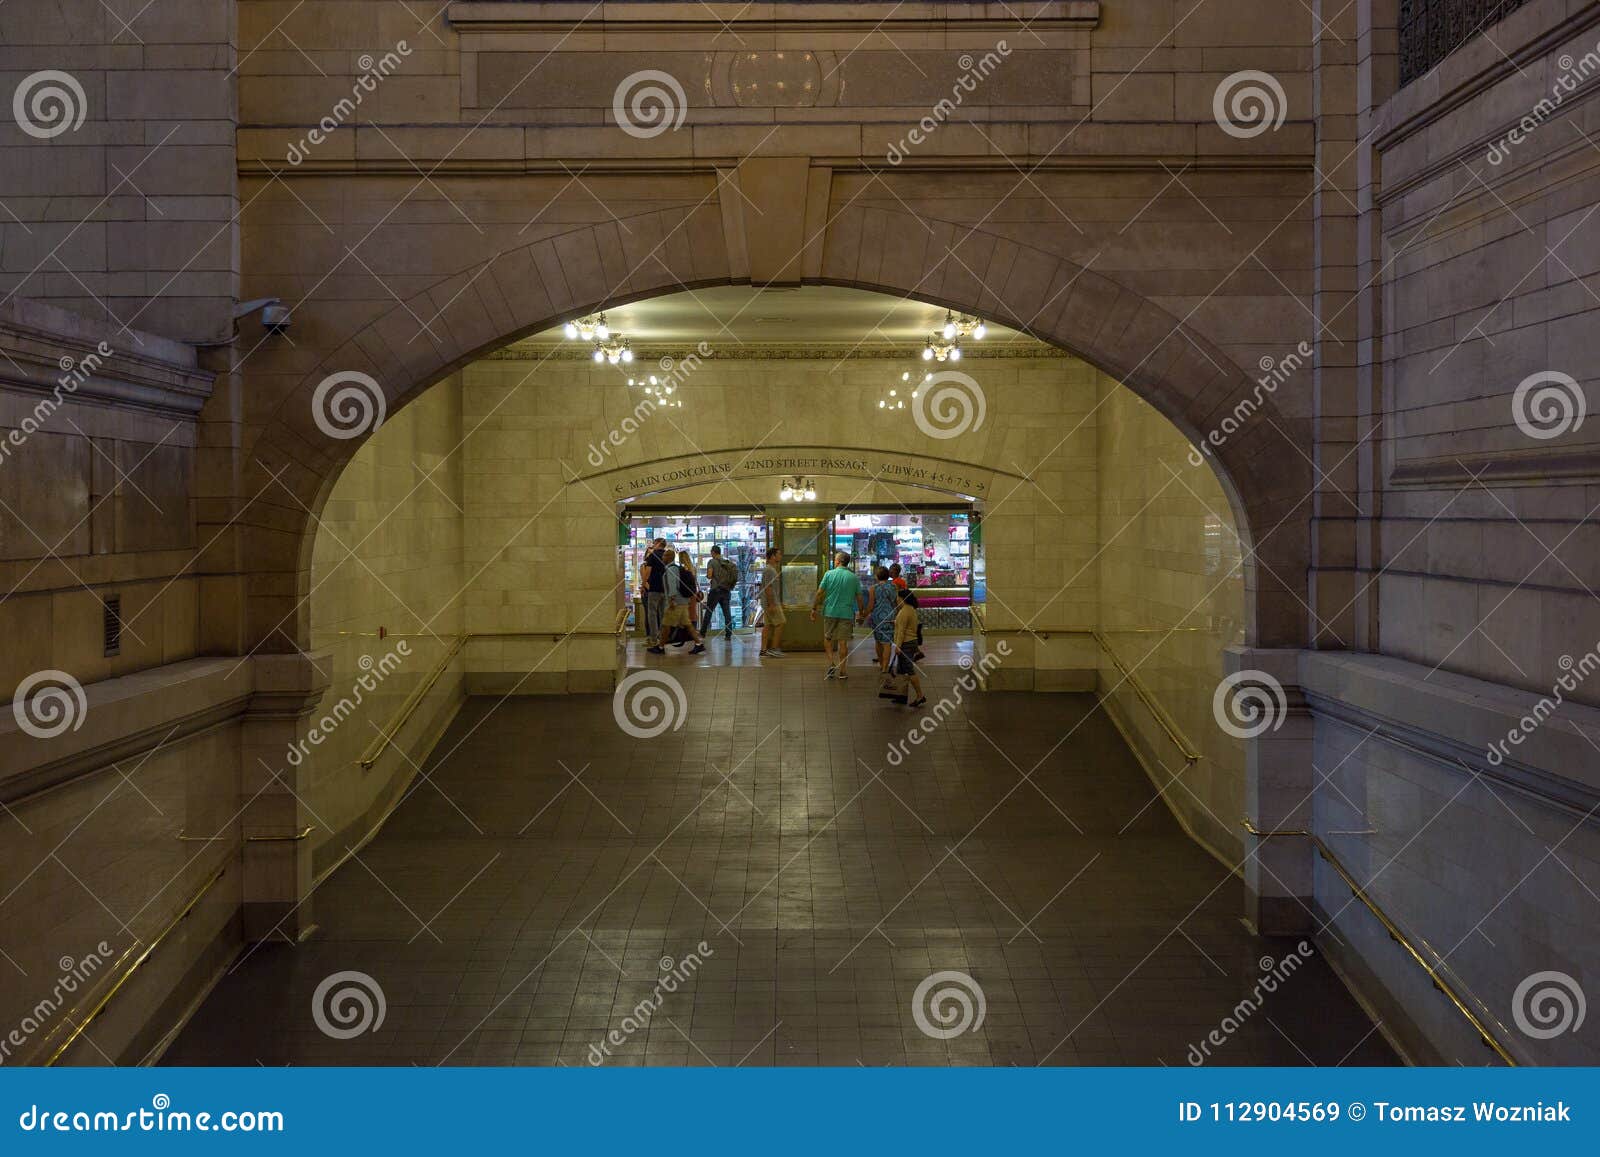 Interiores e detalhes de terminal de Grand Central em New York. New York, NYC, EUA 27 de agosto de 2017: Interiores e detalhes de terminal de Grand Central